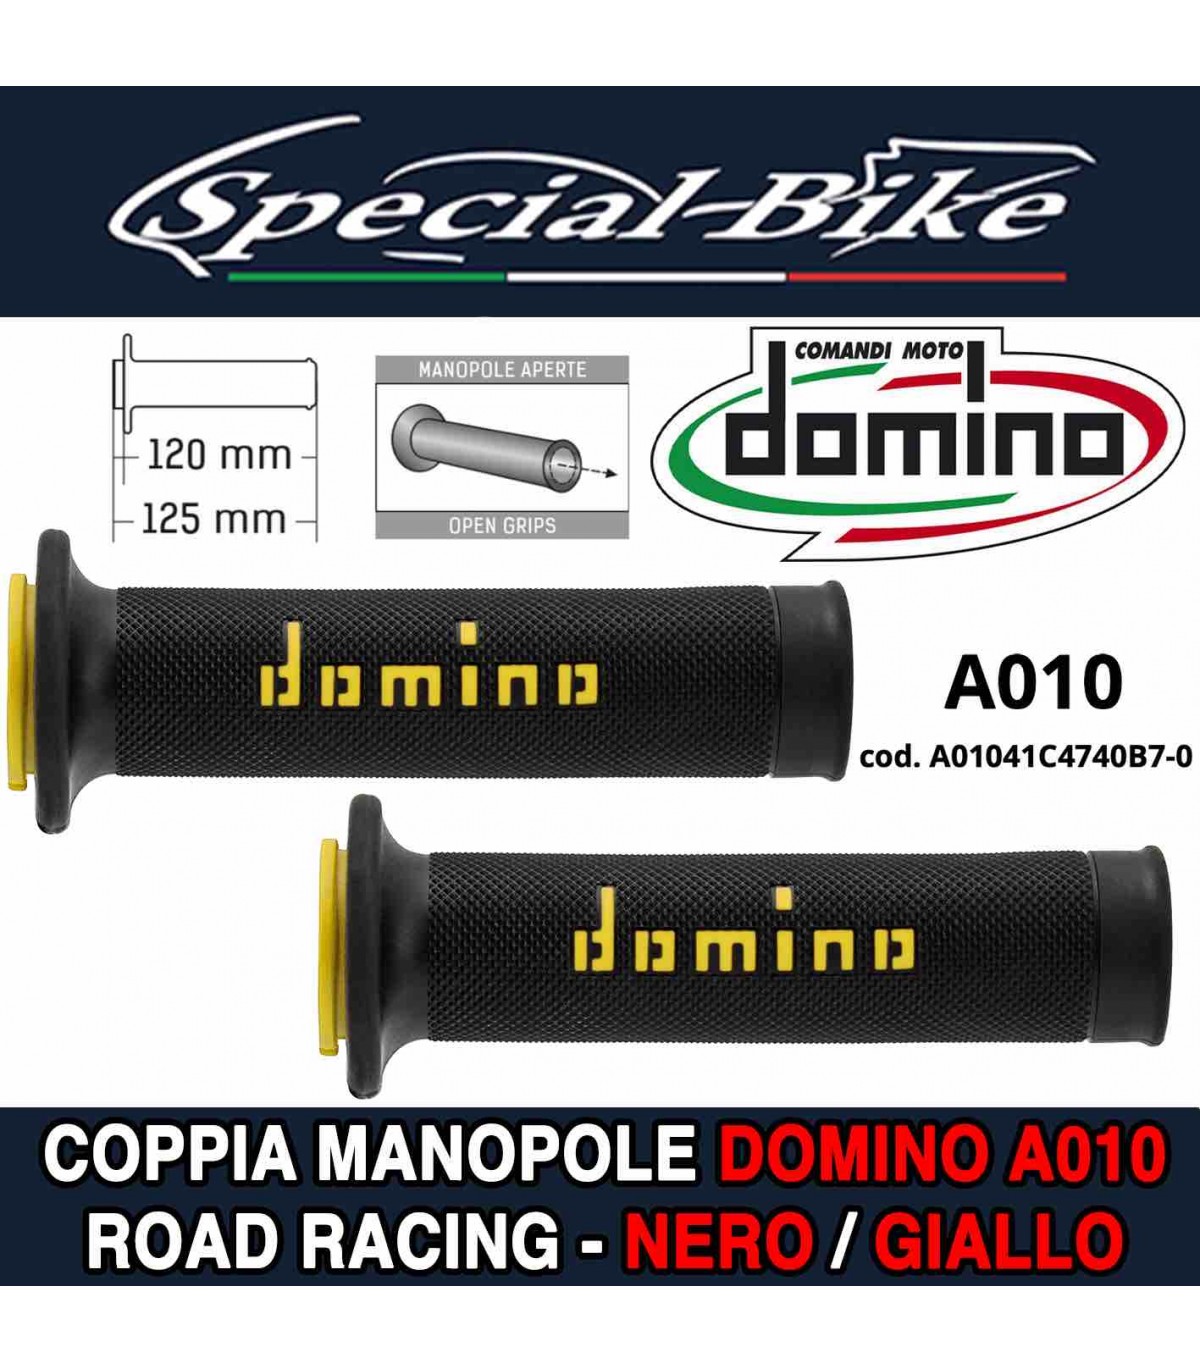 Coppia Manopole Domino A010 Road Racing per Moto Nero Giallo